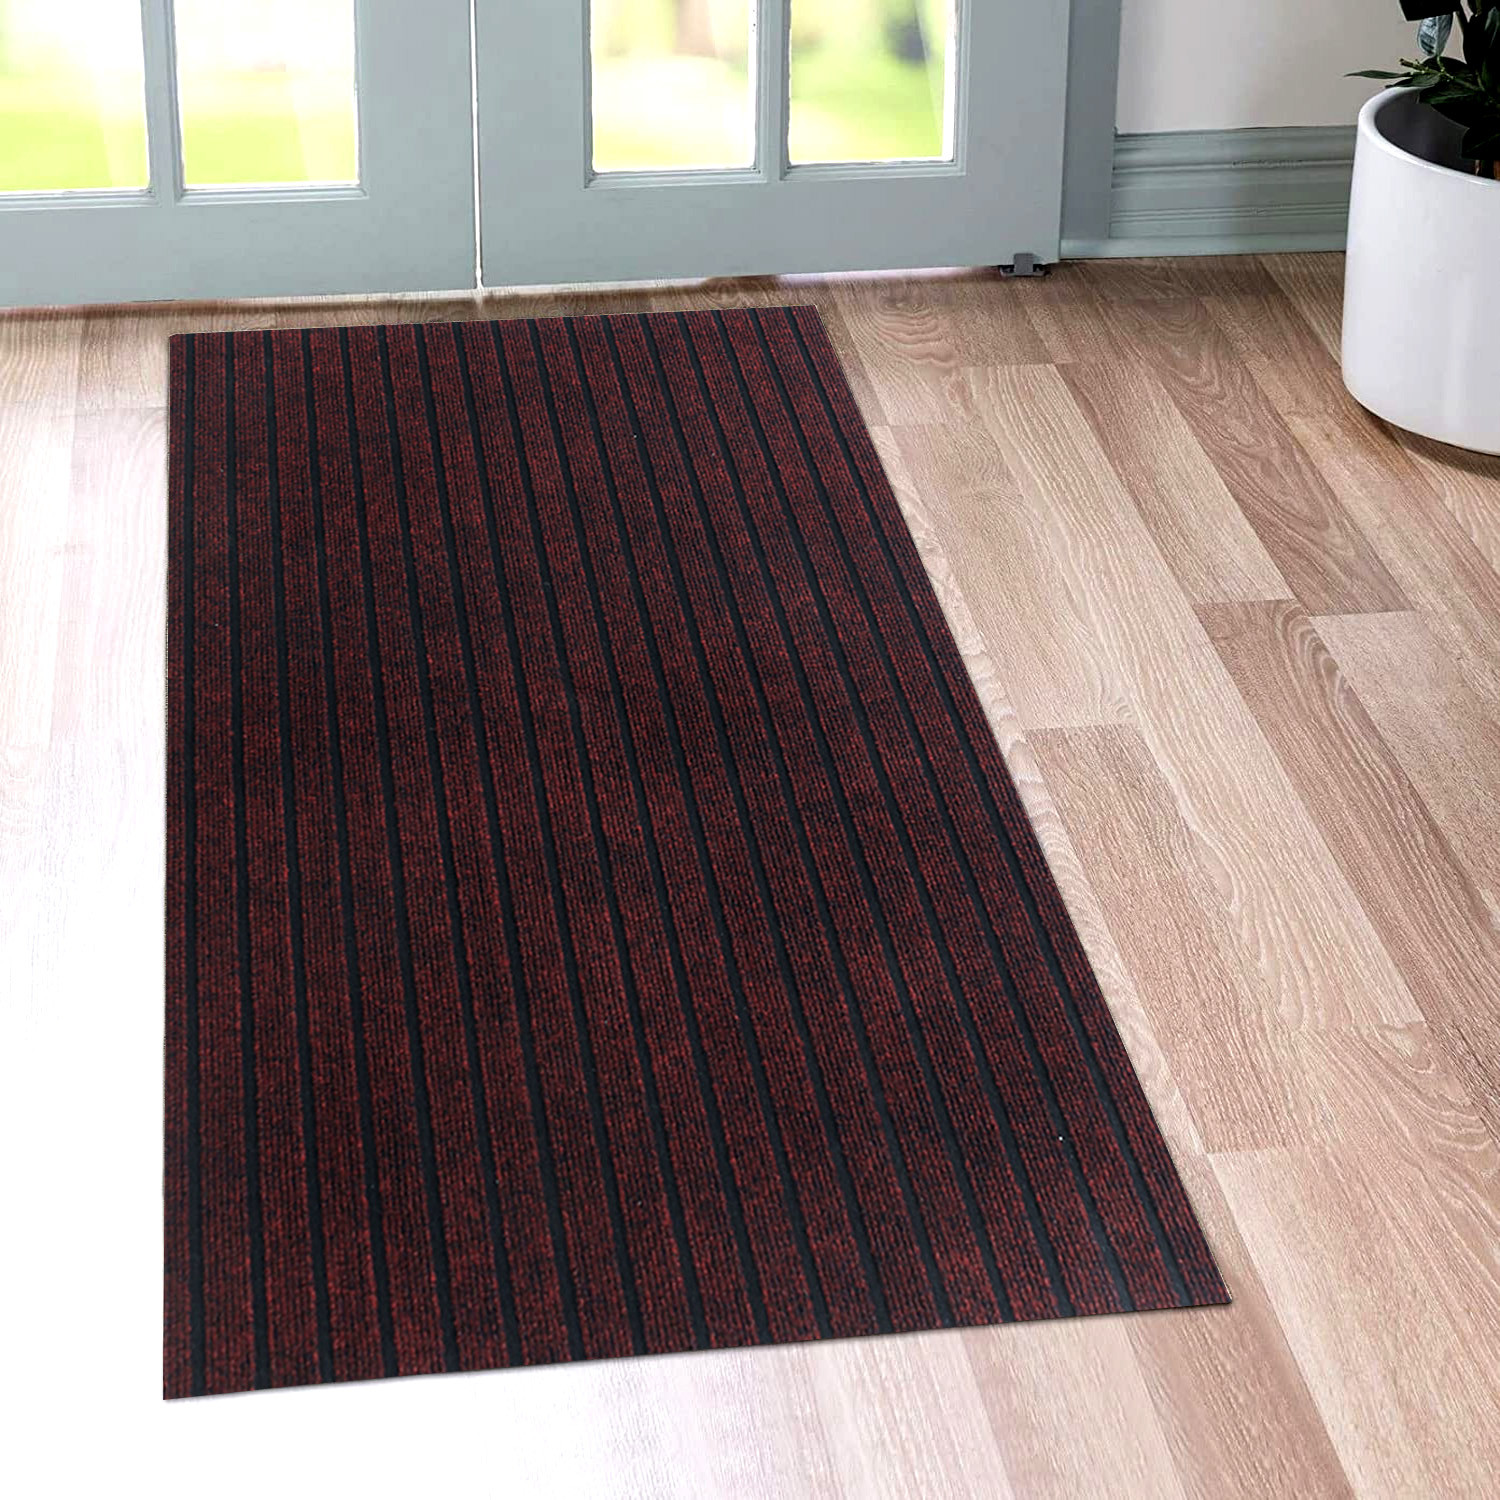 Kuber Industries Microfiber Striped Design Solid Anti-Skid Bedside Runner & Carpet for Living Room,Bedroom,24